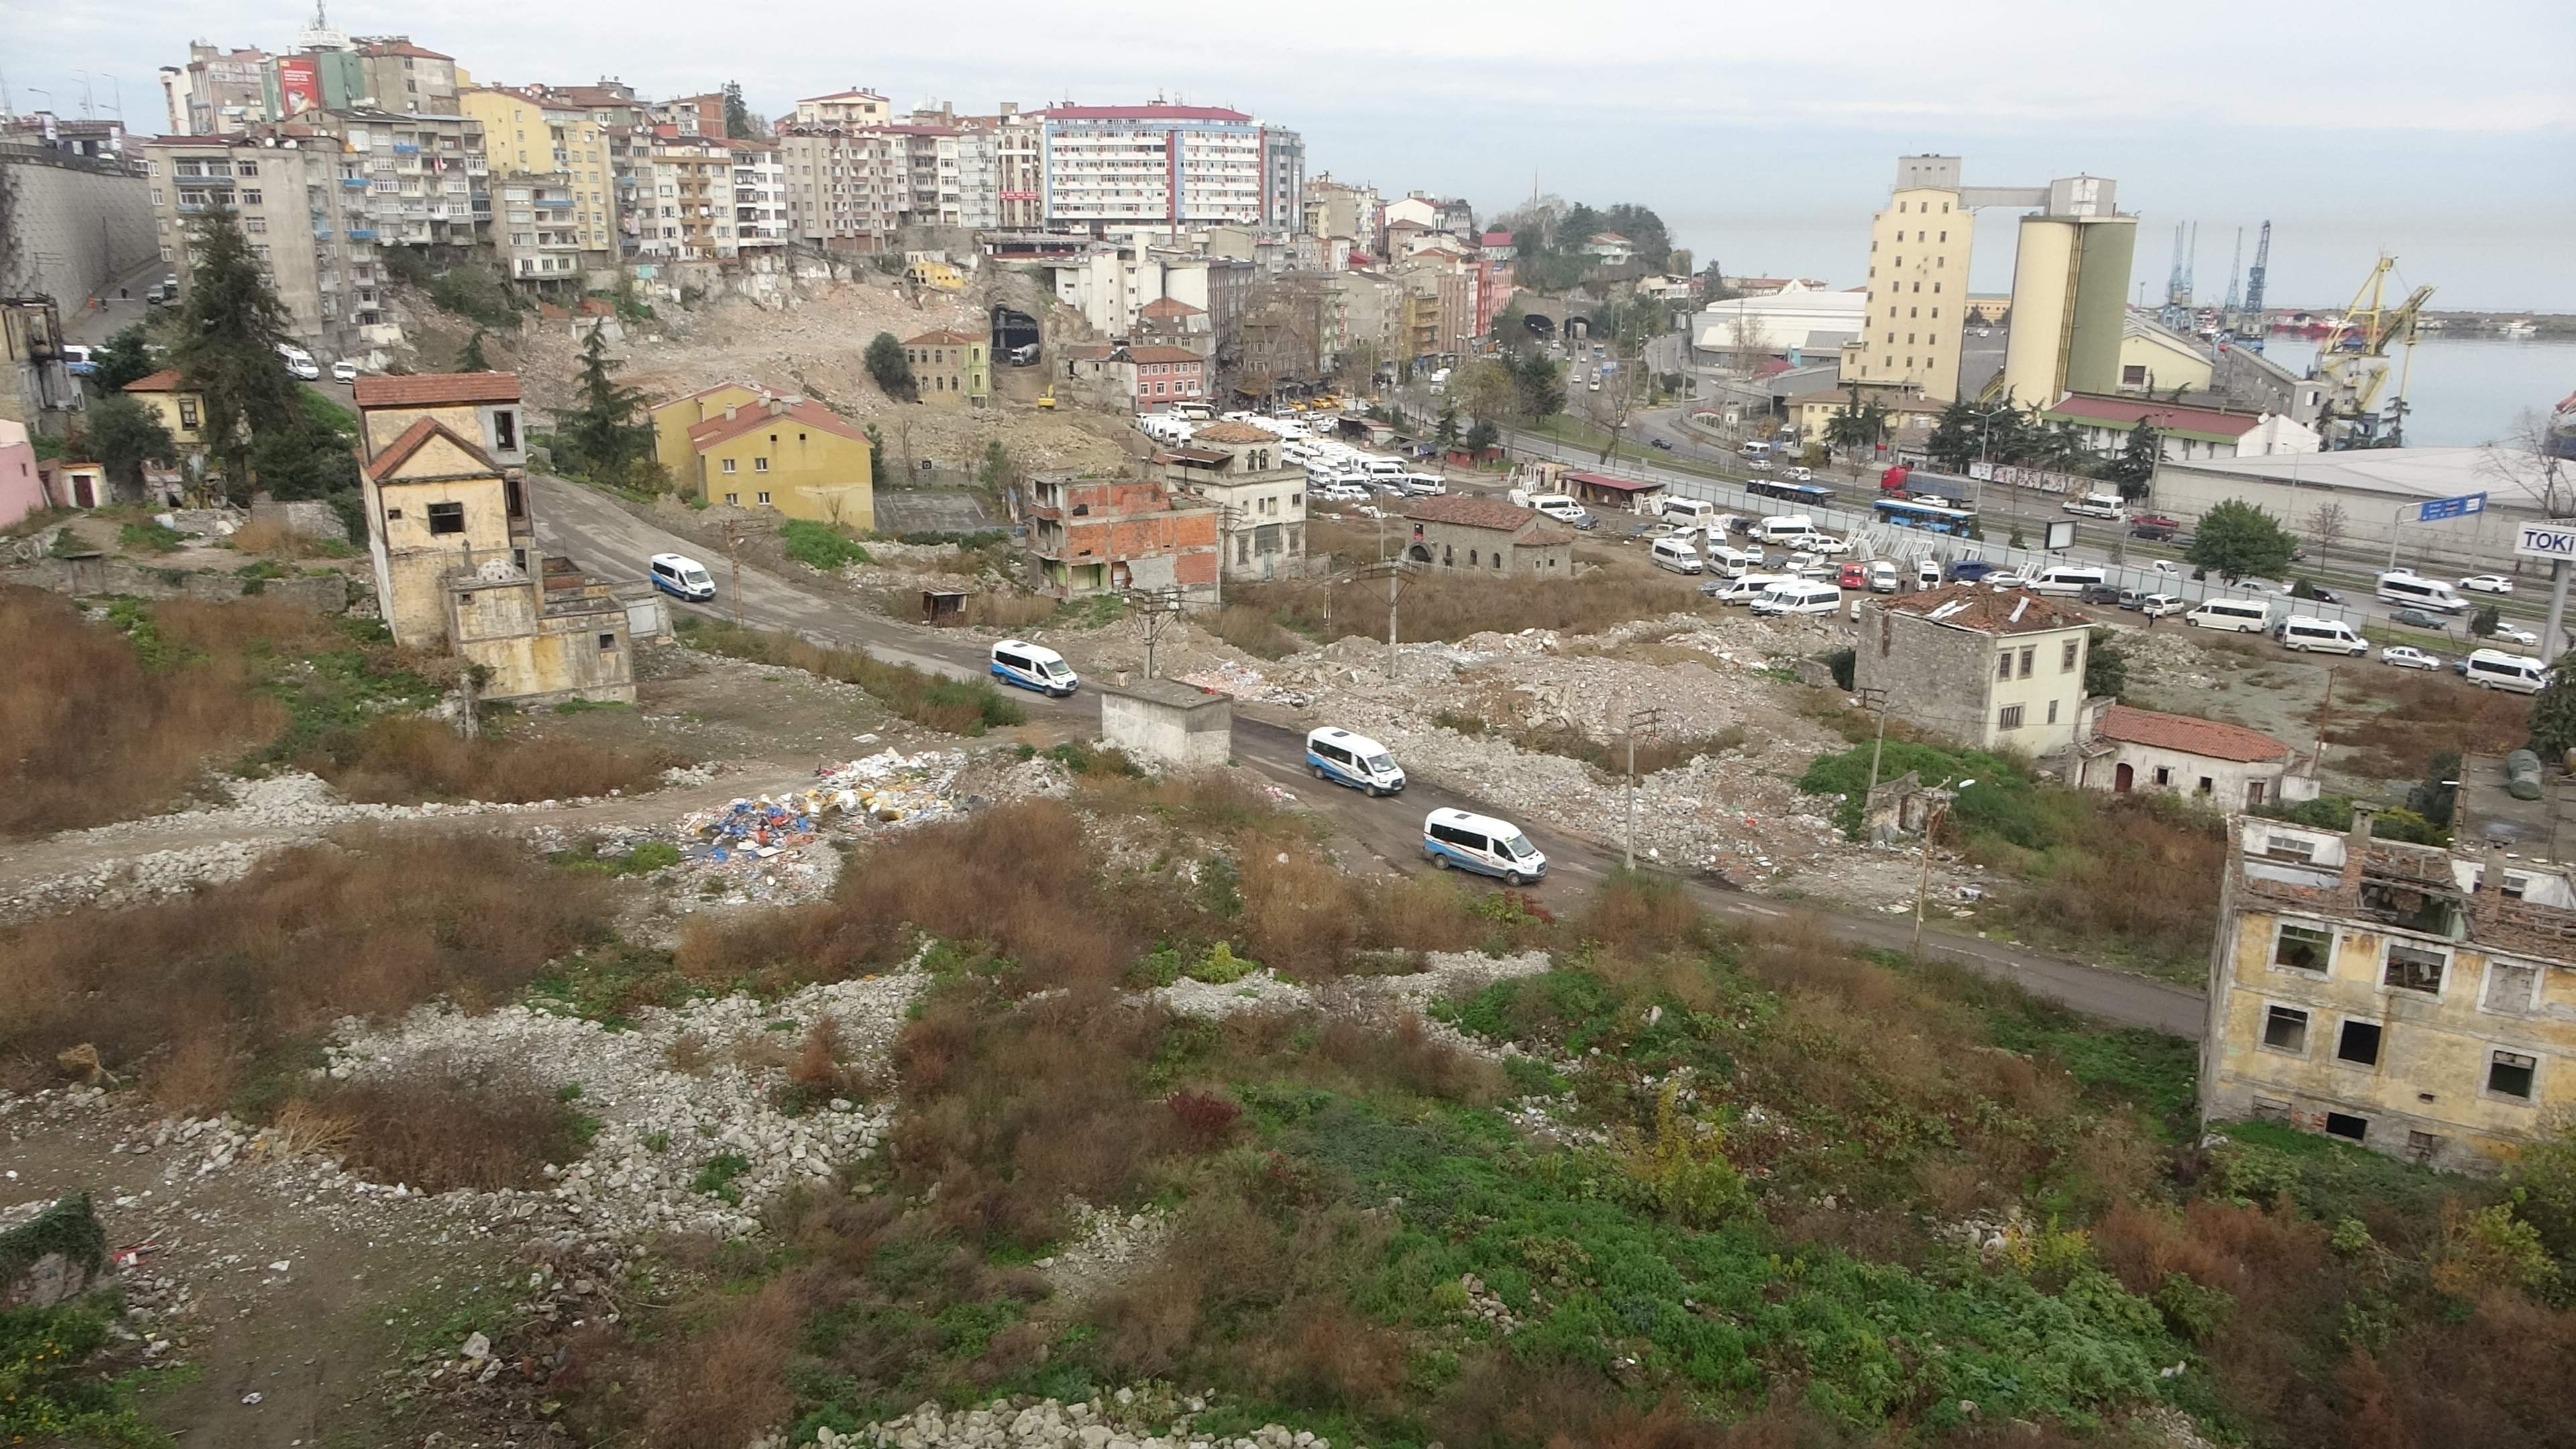 Trabzon'da bu otopark Karadeniz Sahil Yoluna tünelle bağlanacak